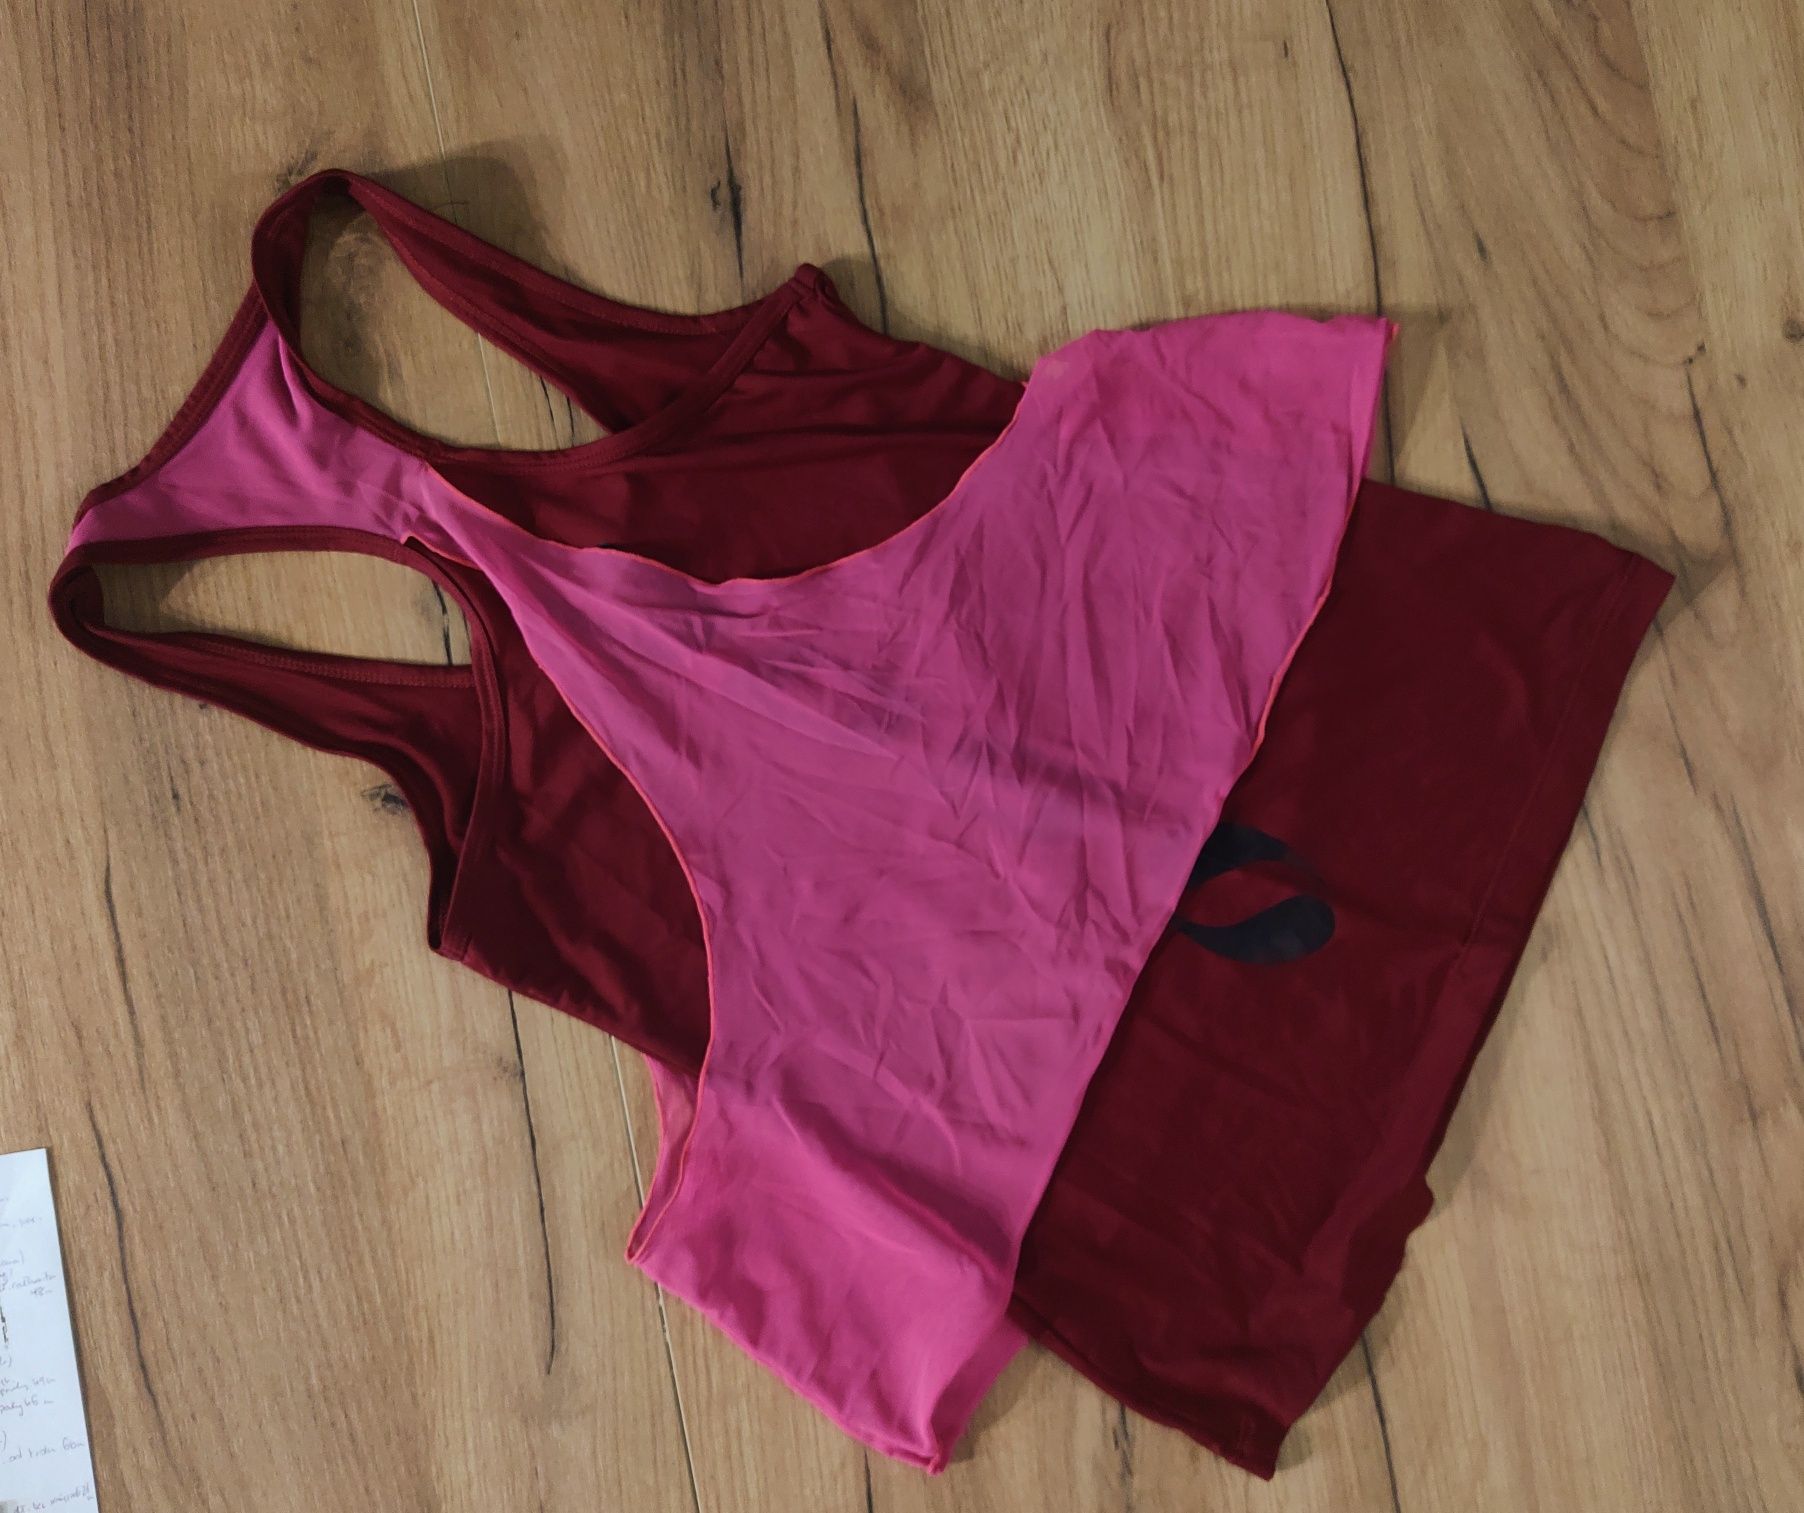 Sportowy top bluzka z siateczką XS S bordo róż neon fitness koszulka